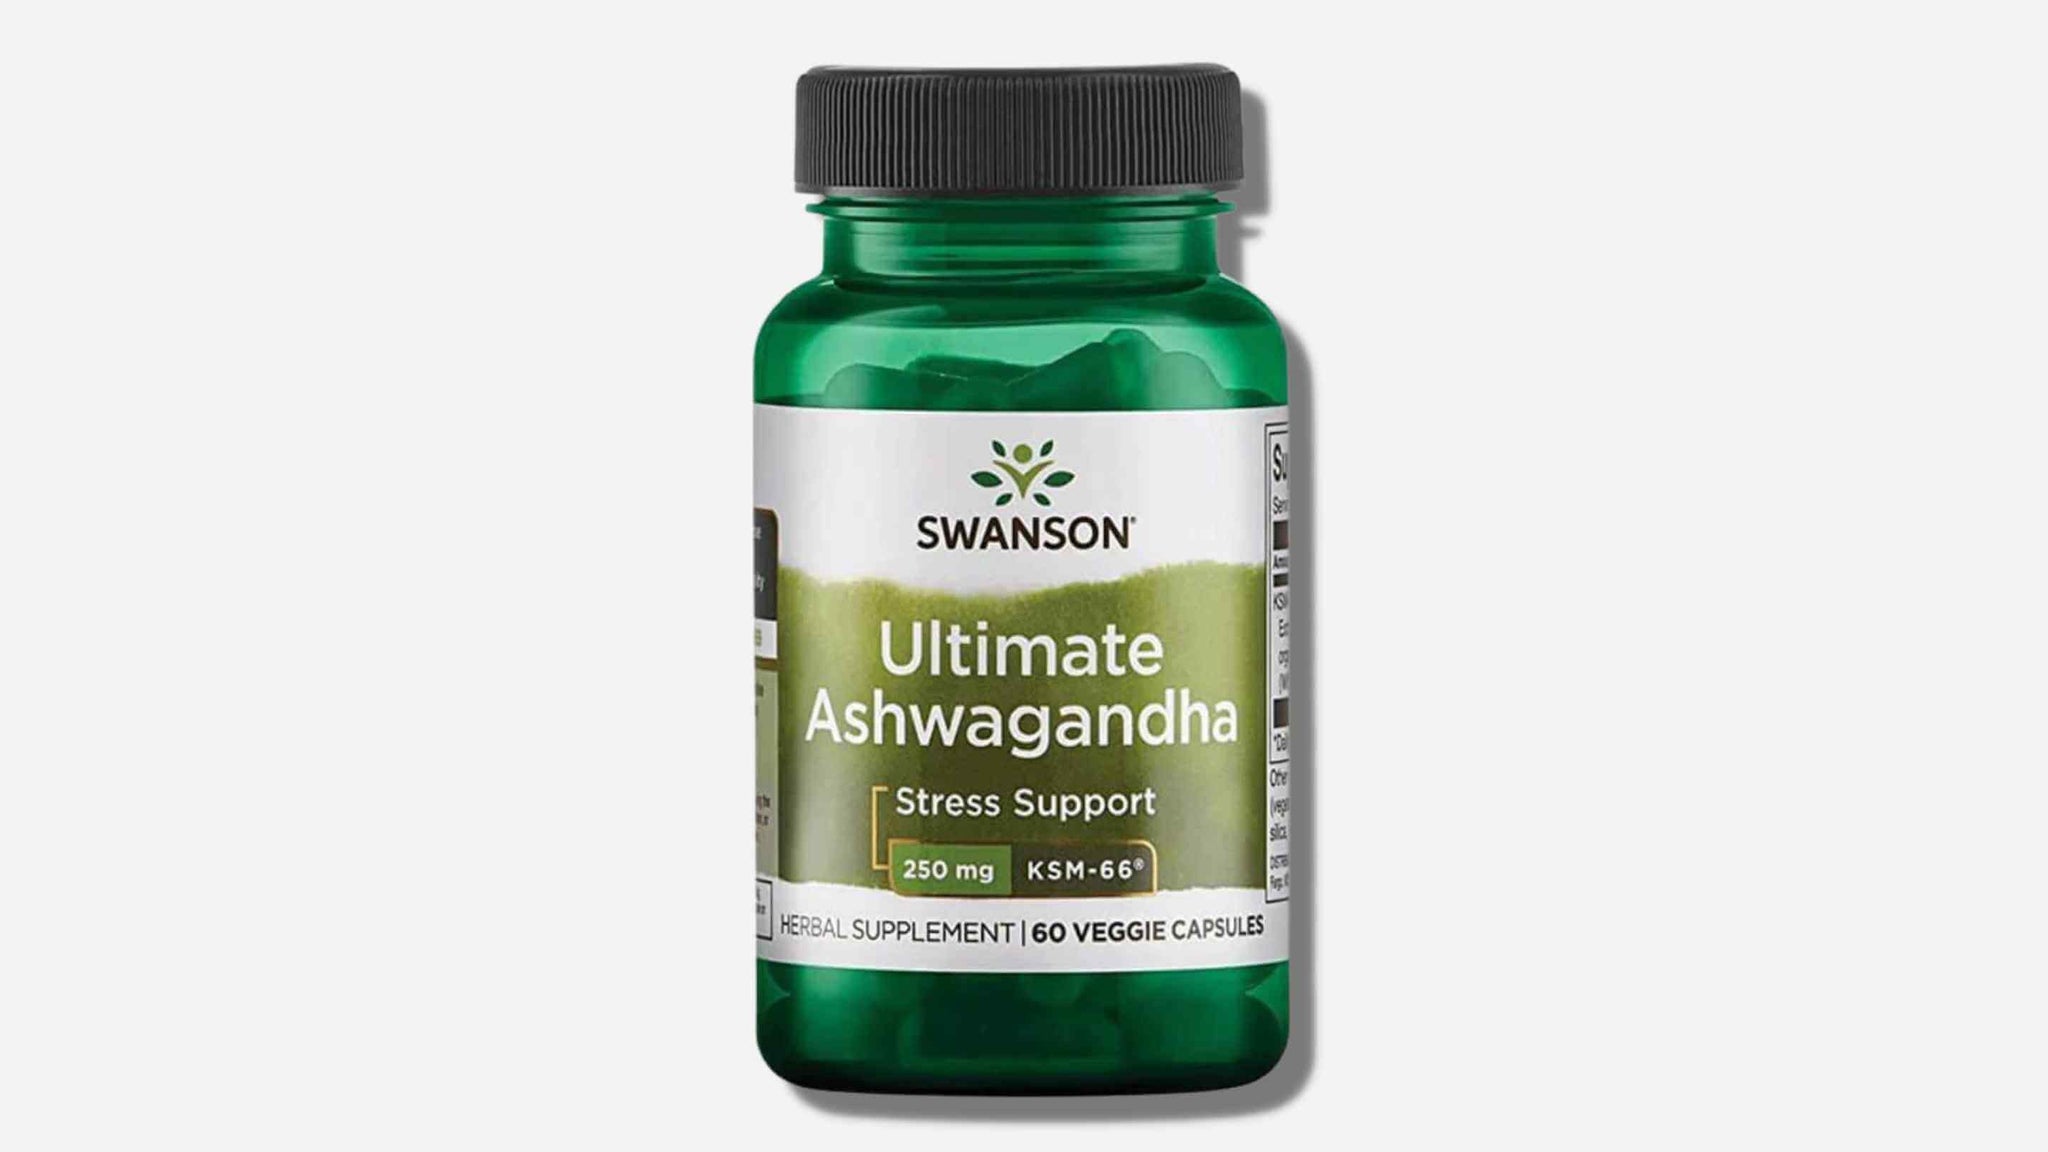 Swanson Ultimate Ashwagandha